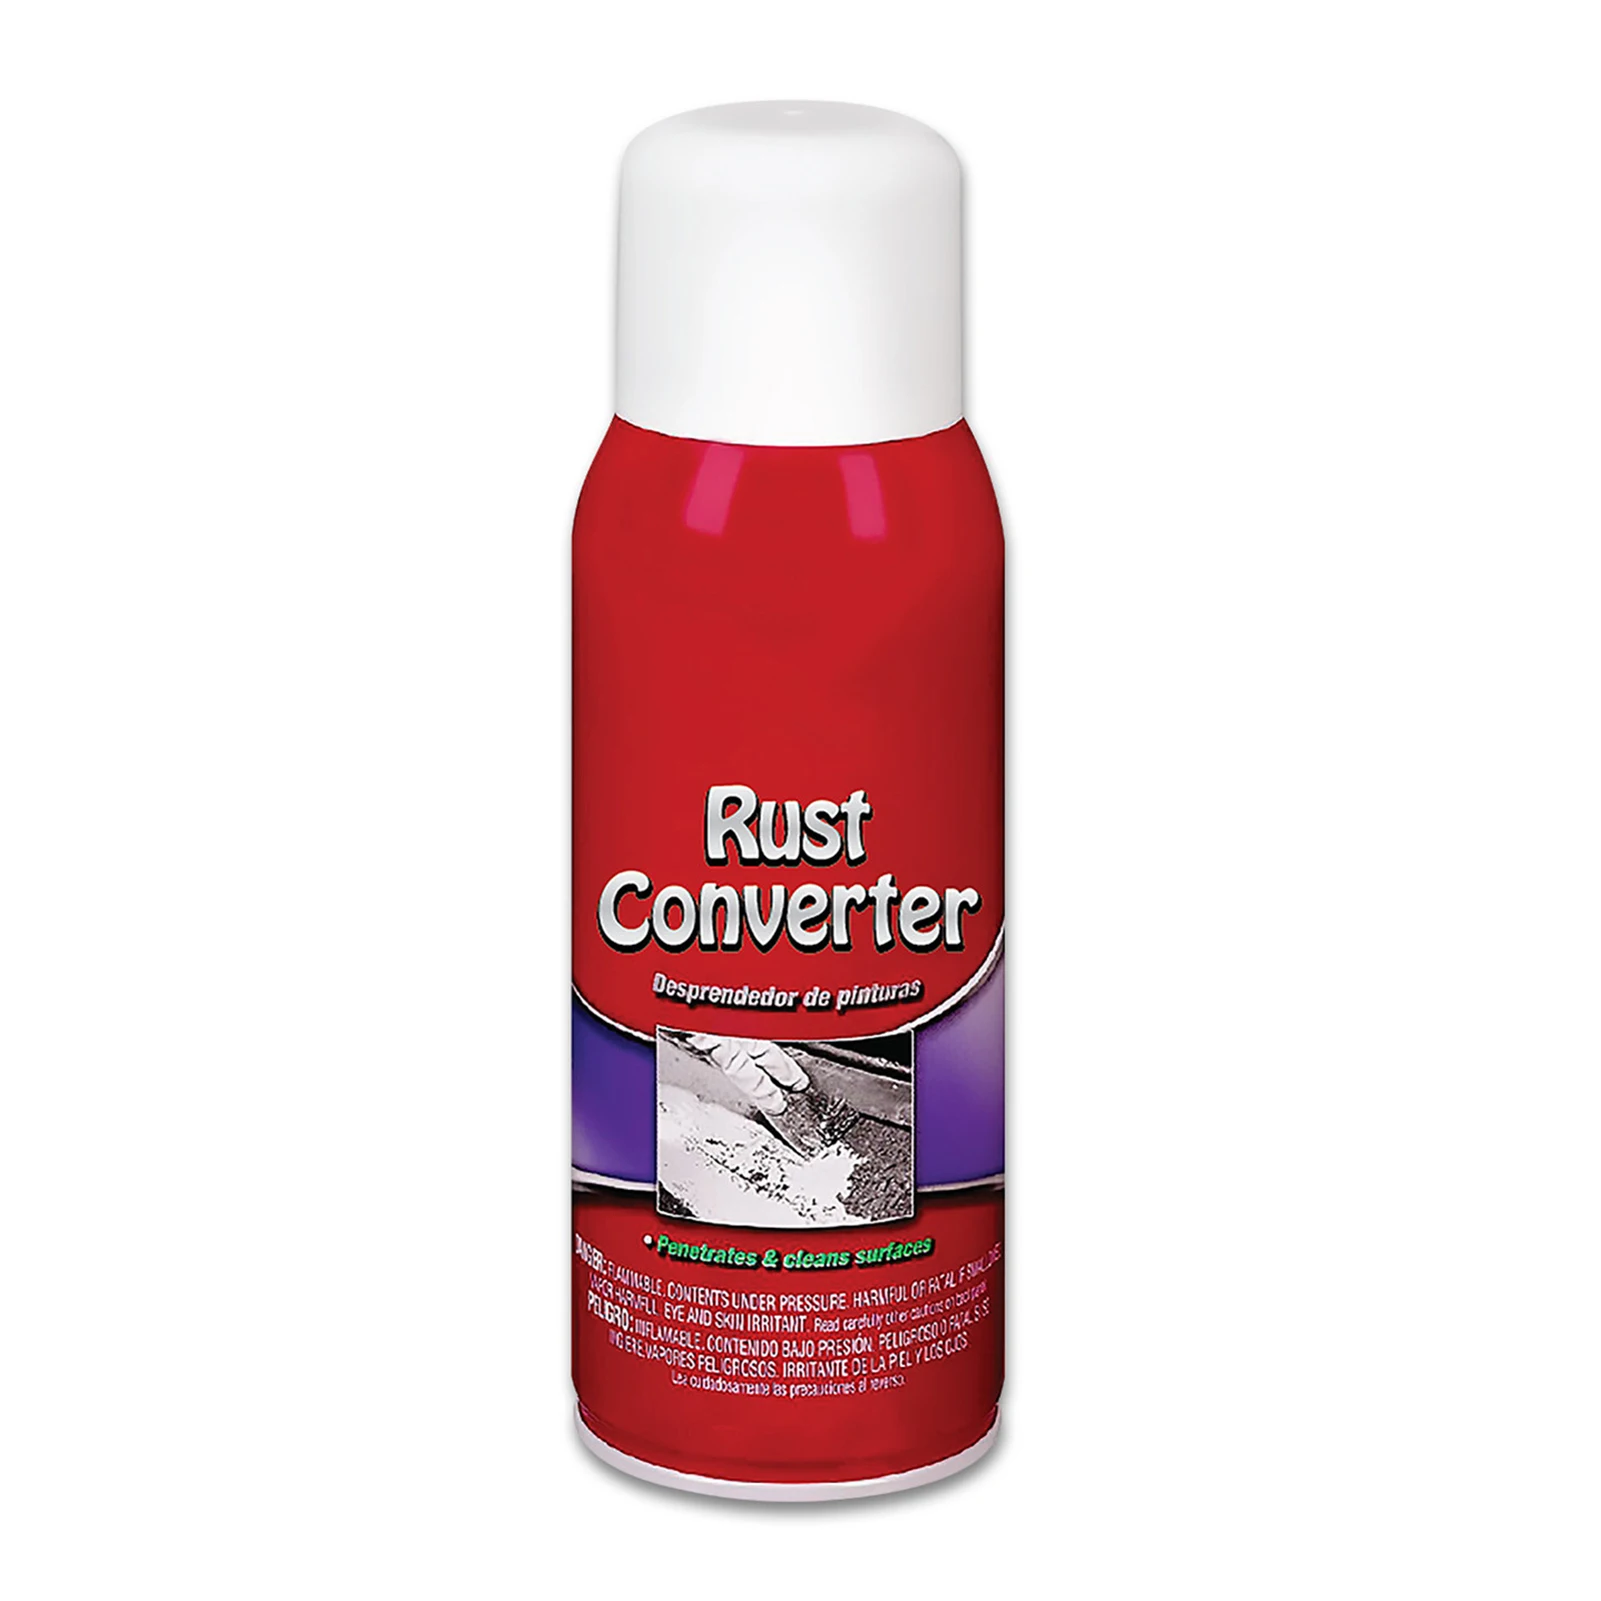 Rust cleaner spray как пользоваться фото 22